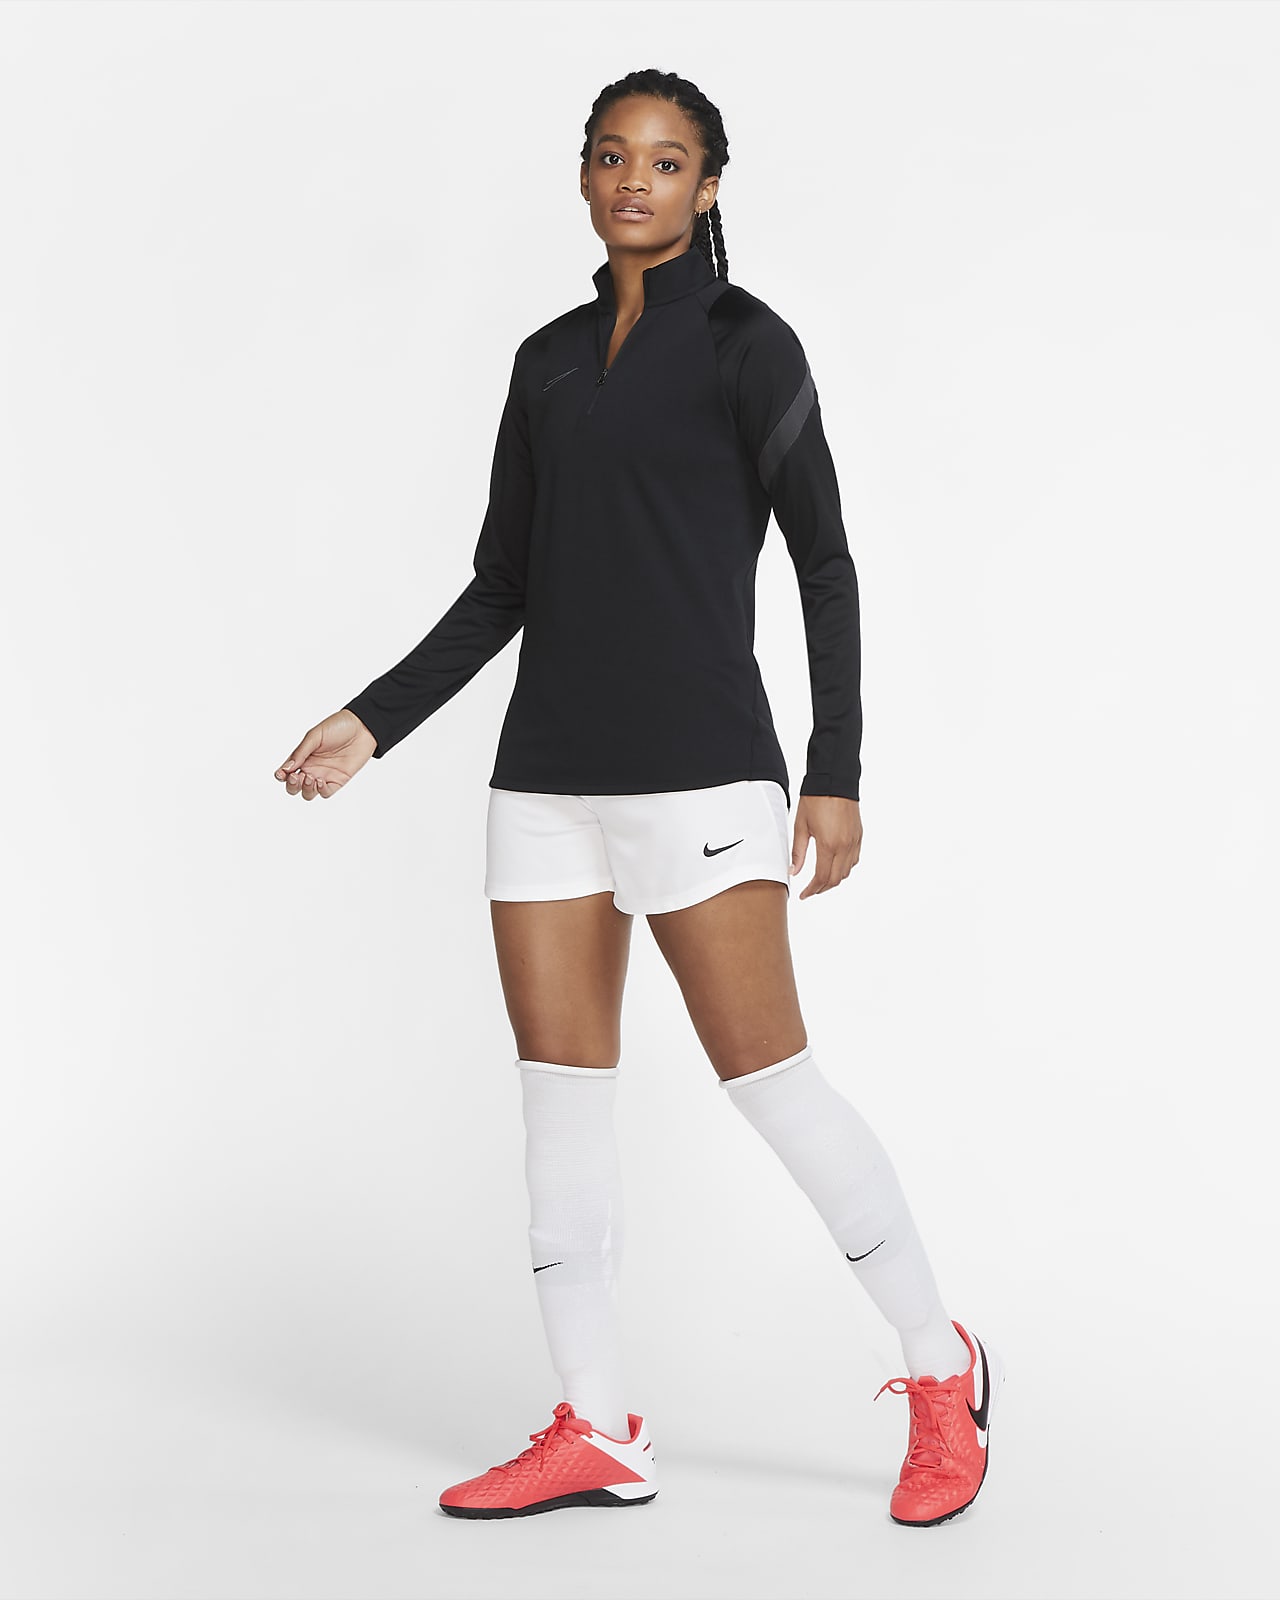 hoofdonderwijzer Overtekenen Ontwaken Nike Dri-FIT Academy Pro Women's Soccer Drill Top. Nike.com